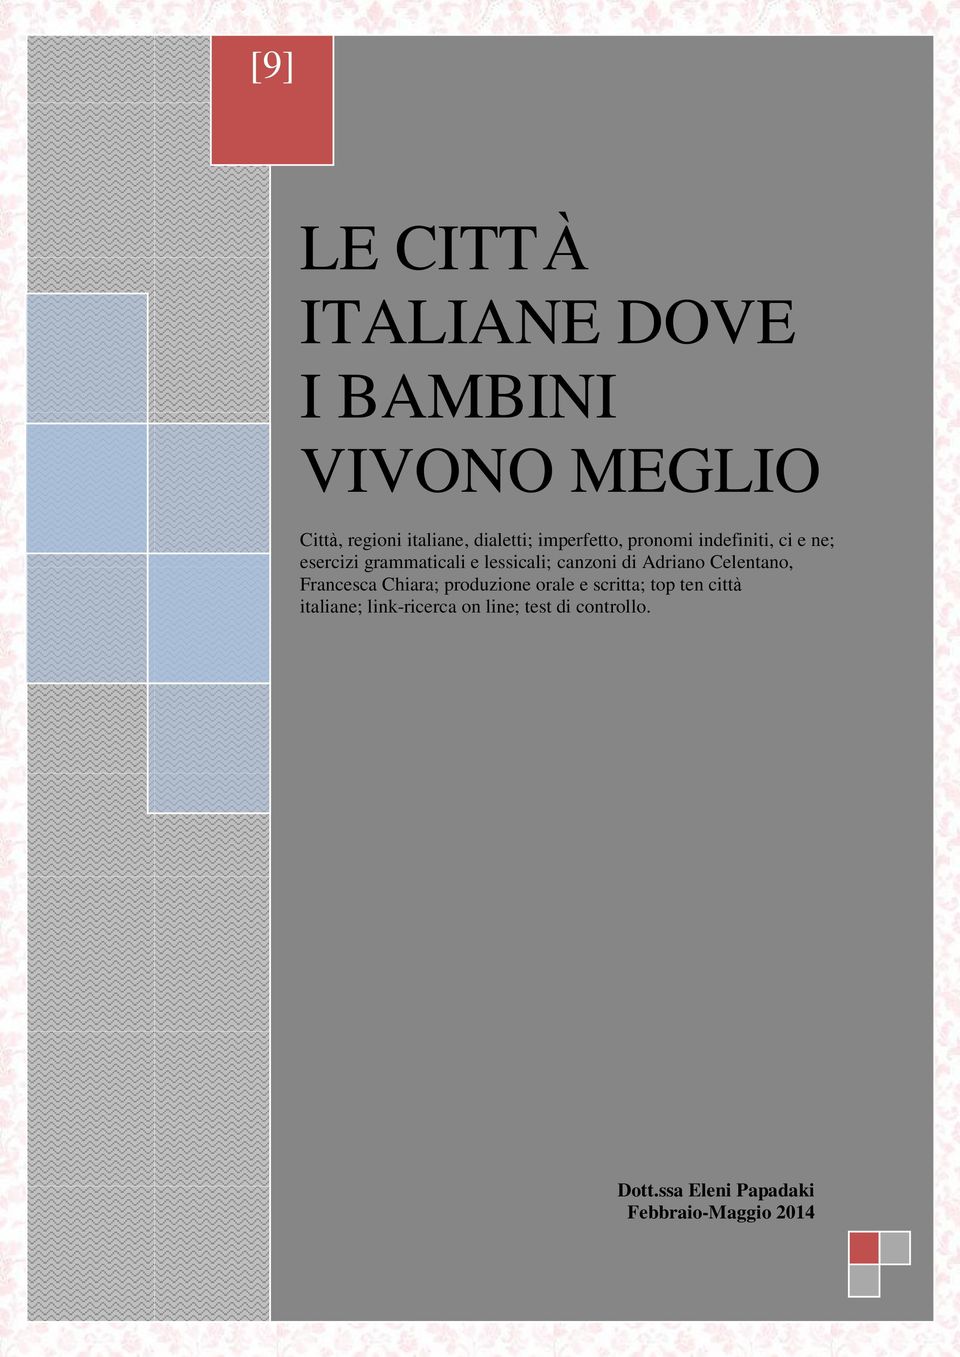 di Adriano Celentano, Francesca Chiara; produzione orale e scritta; top ten città